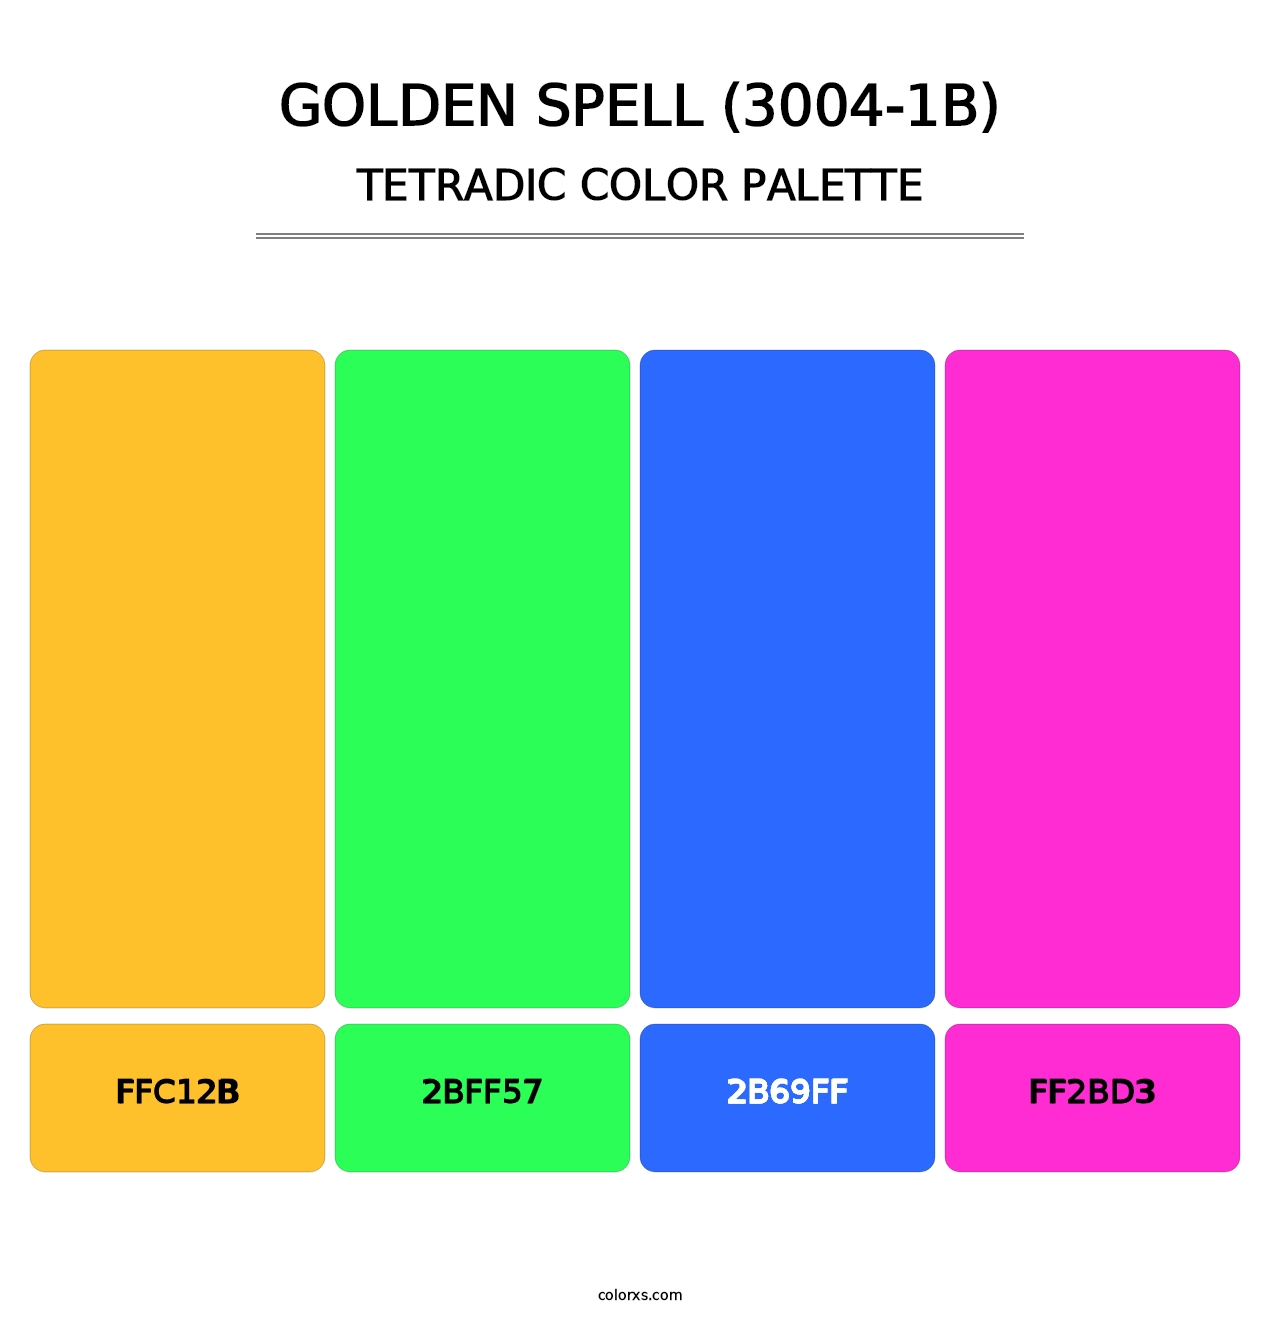 Golden Spell (3004-1B) - Tetradic Color Palette